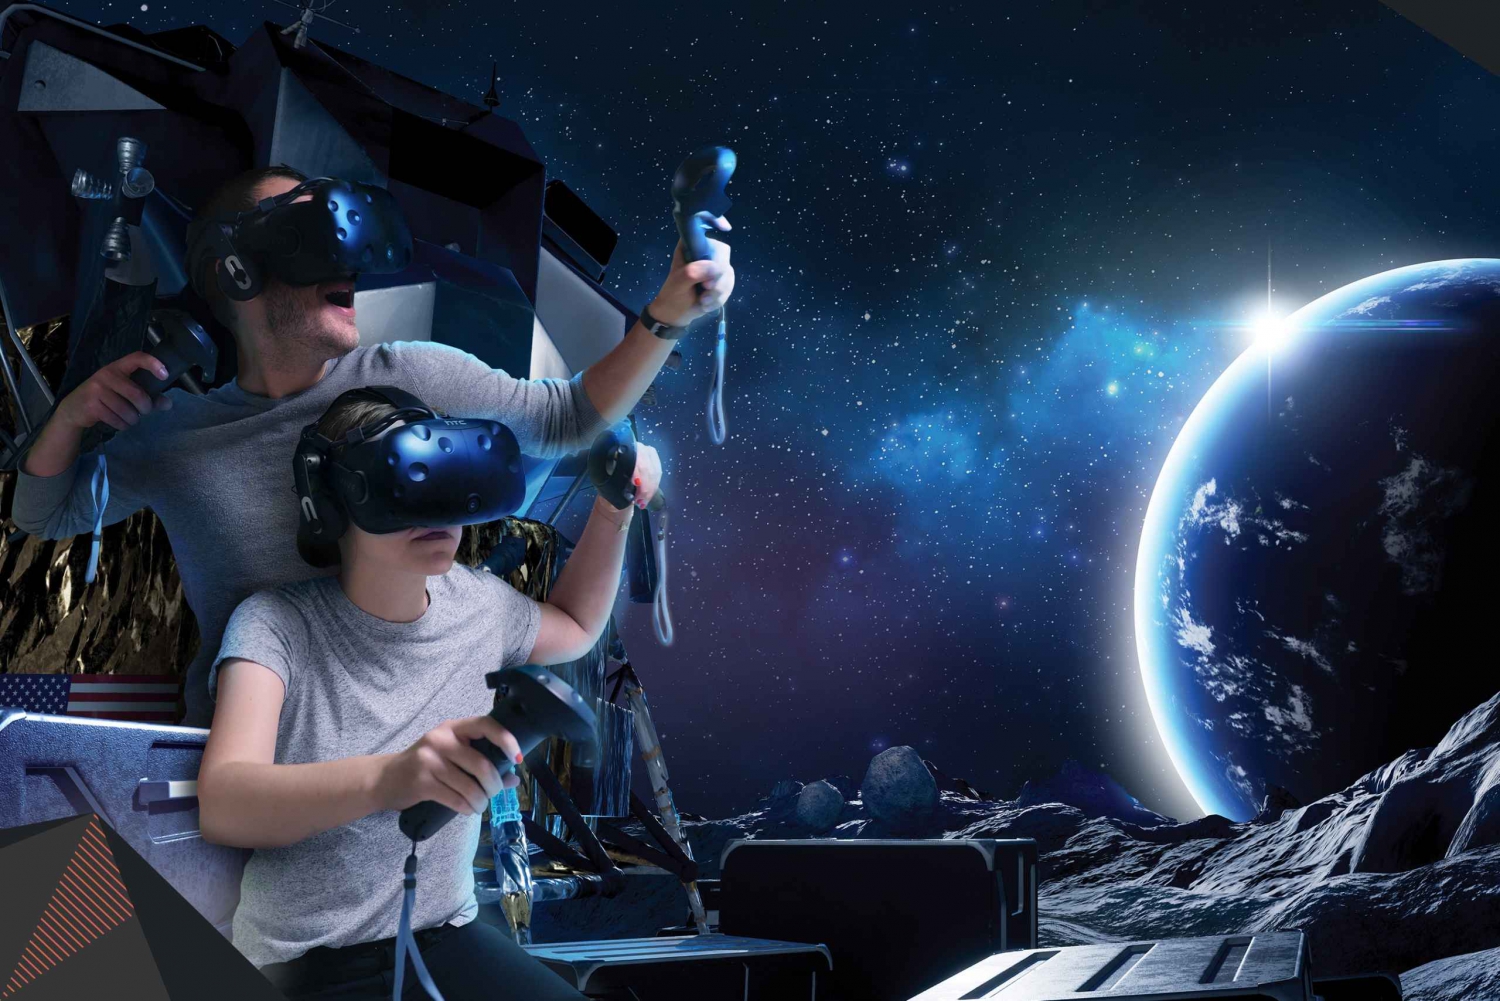 Sydney: 45-minutters virtuell virkelighetsopplevelse for 2-4 spillere